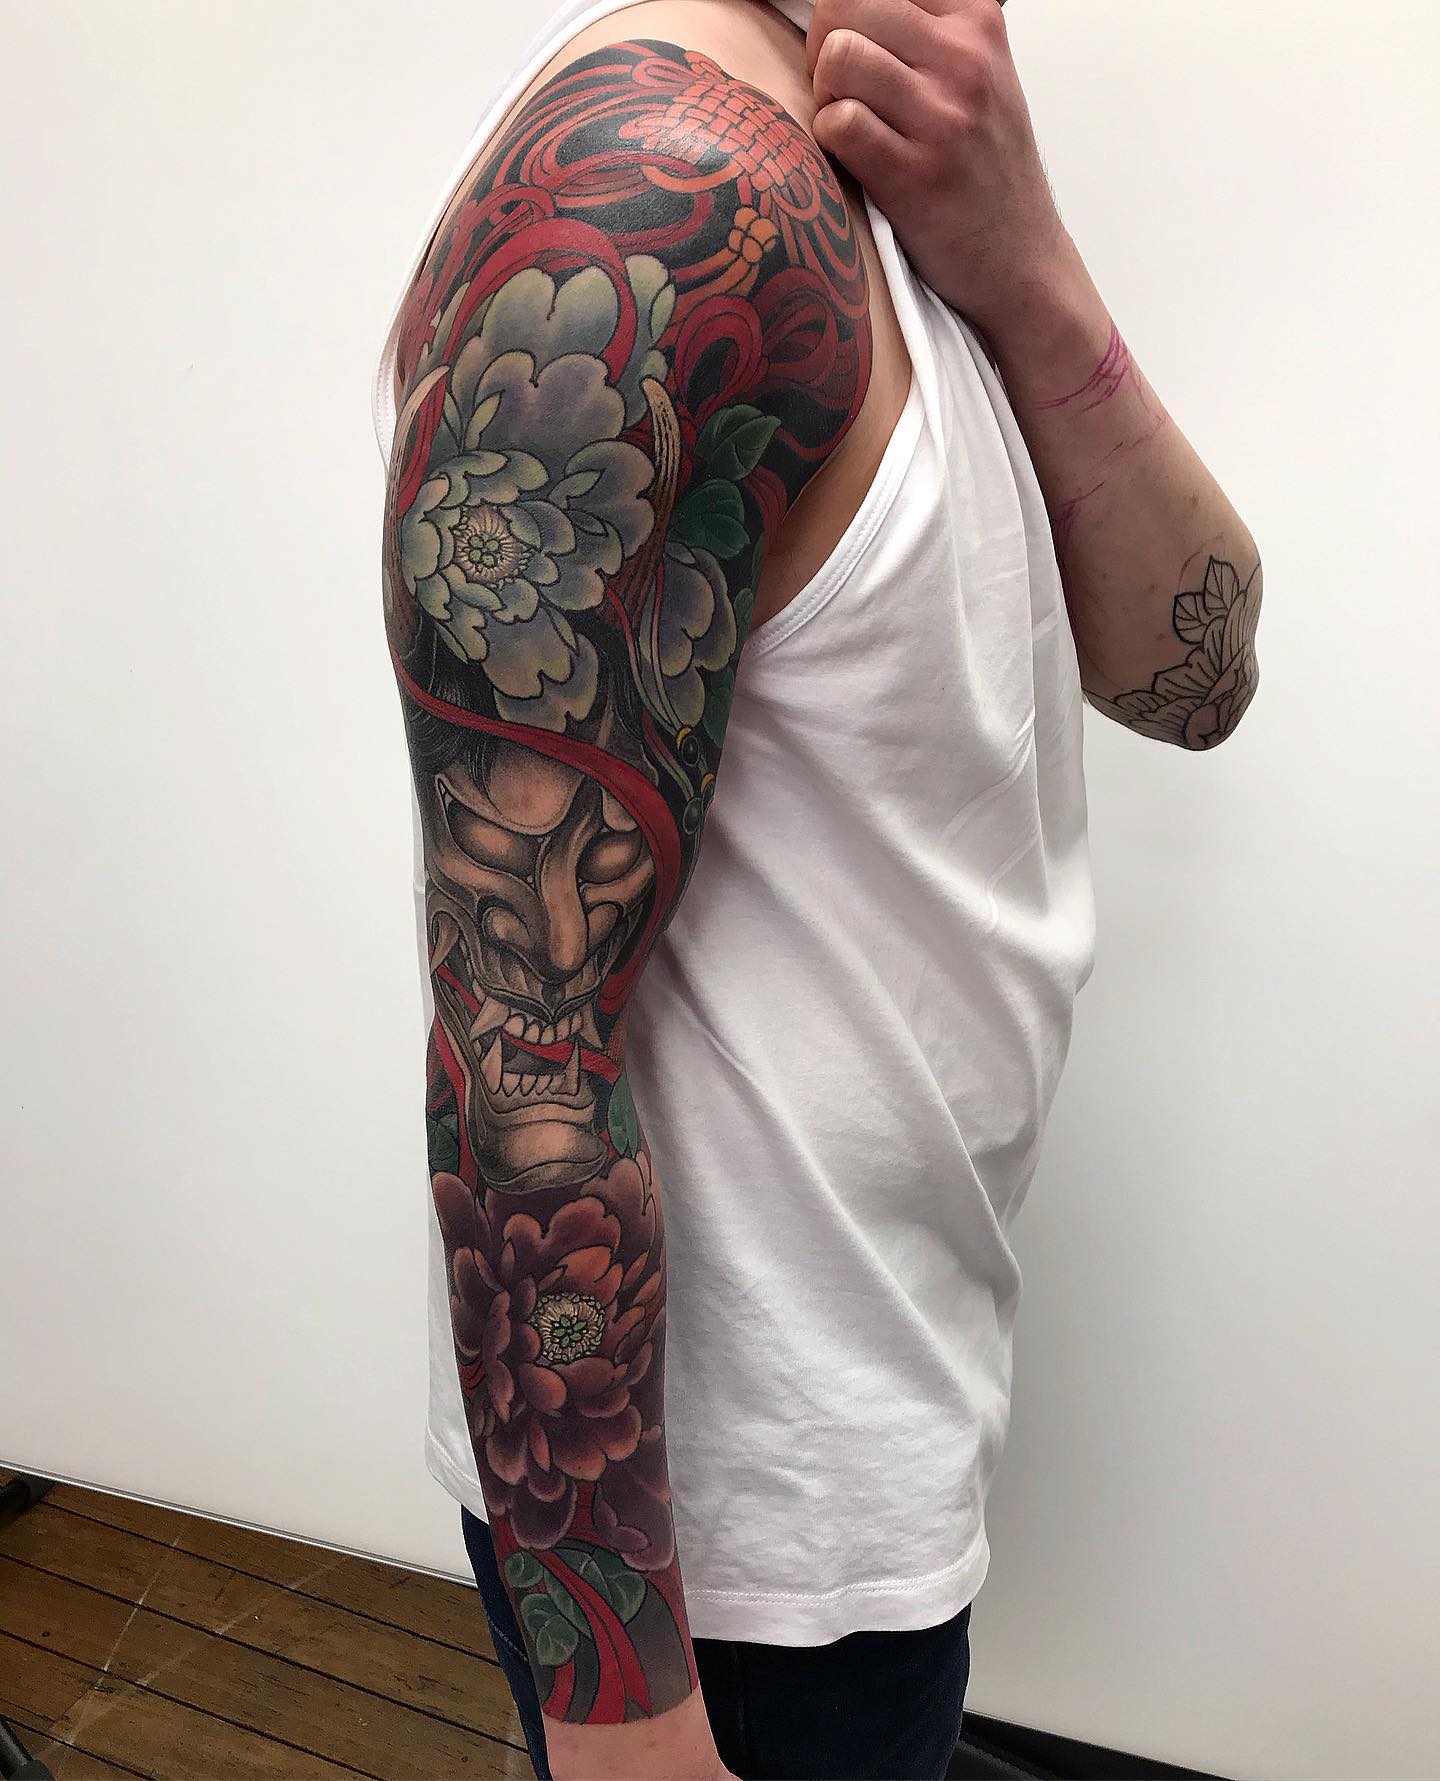 Japanisches männliches Blumen-Tattoo am linken Ärmel